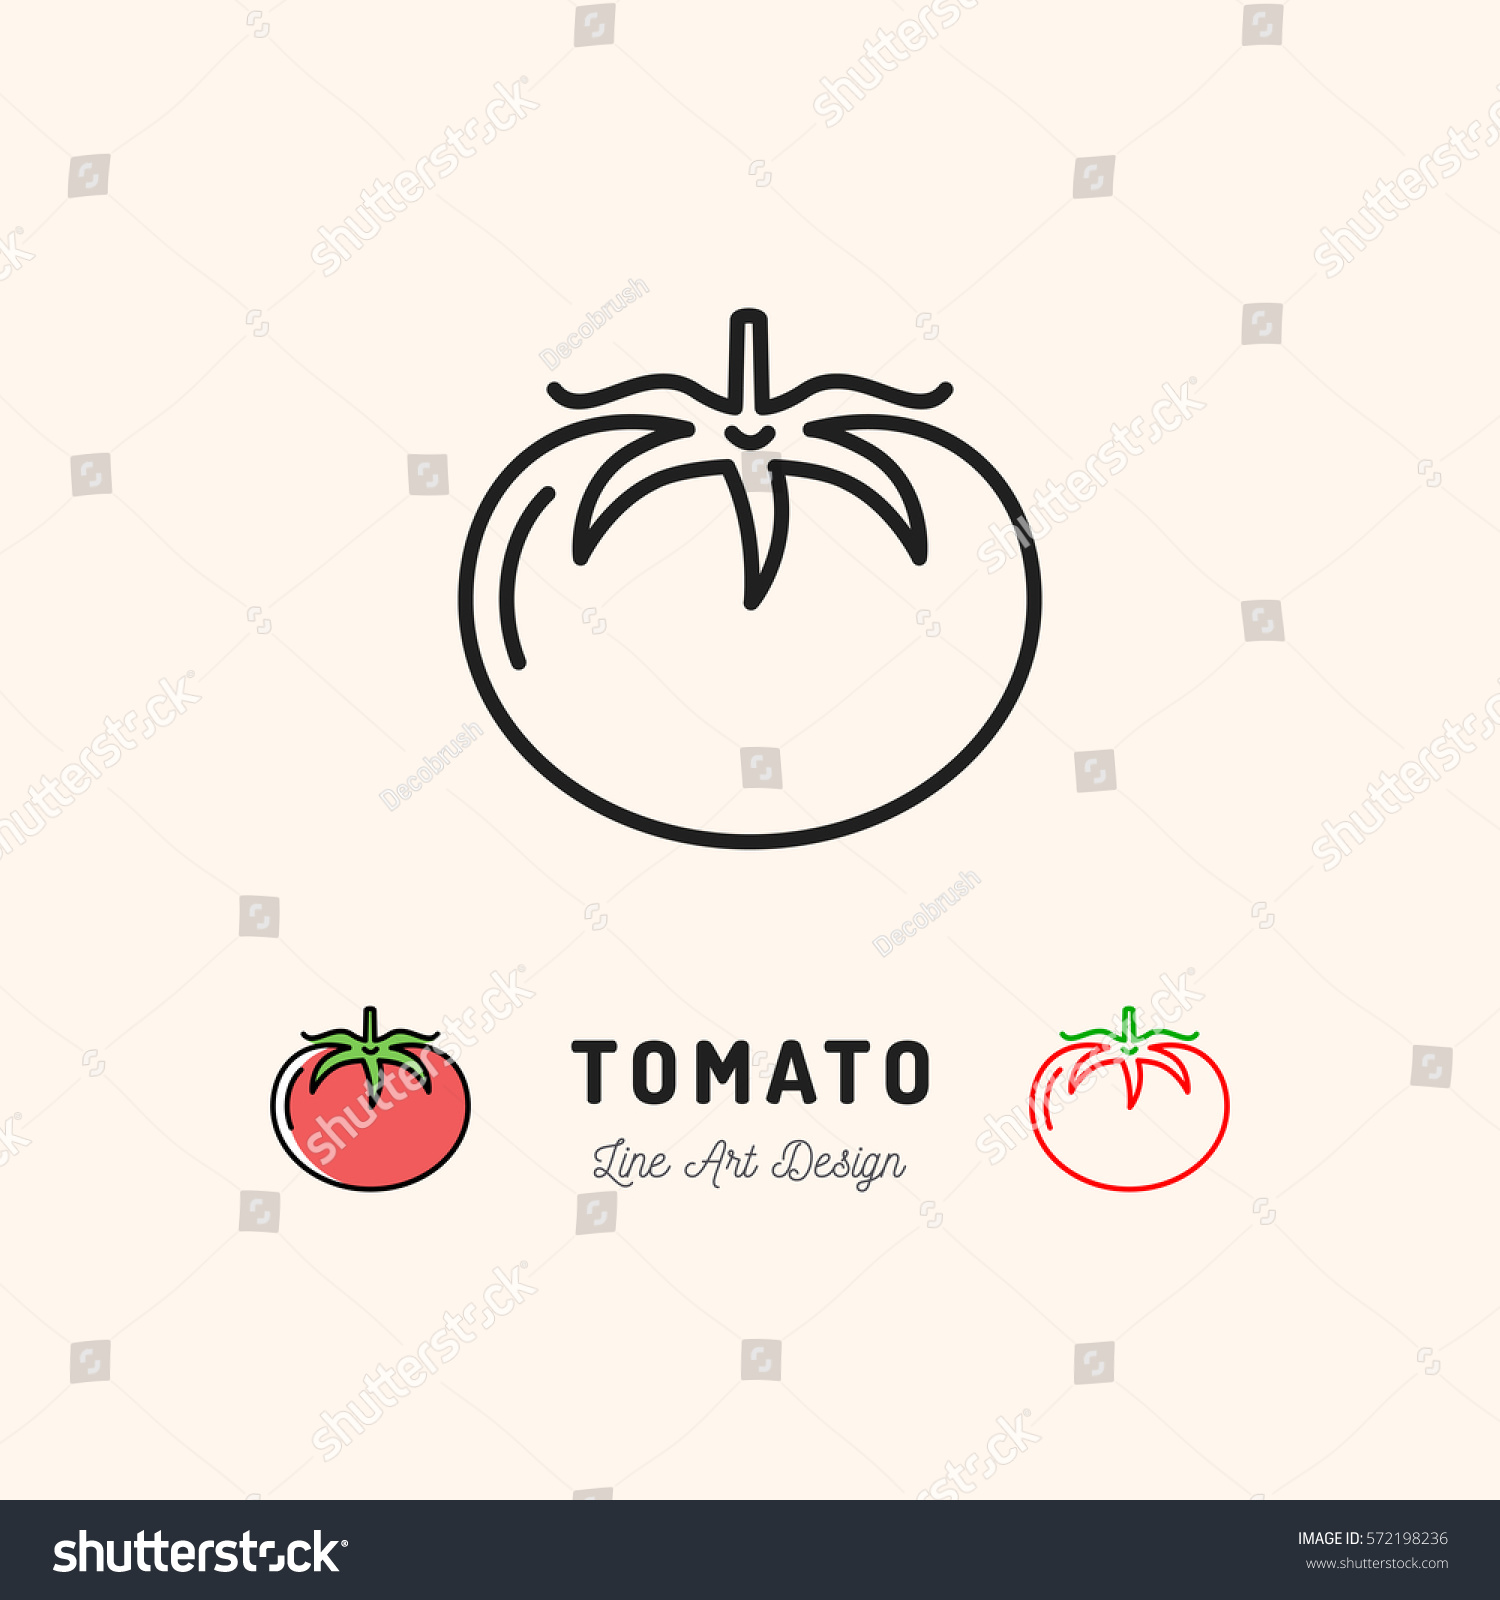 Vector Tomato icon Vegetables logo. Thin line art design, outline illustration #572198236